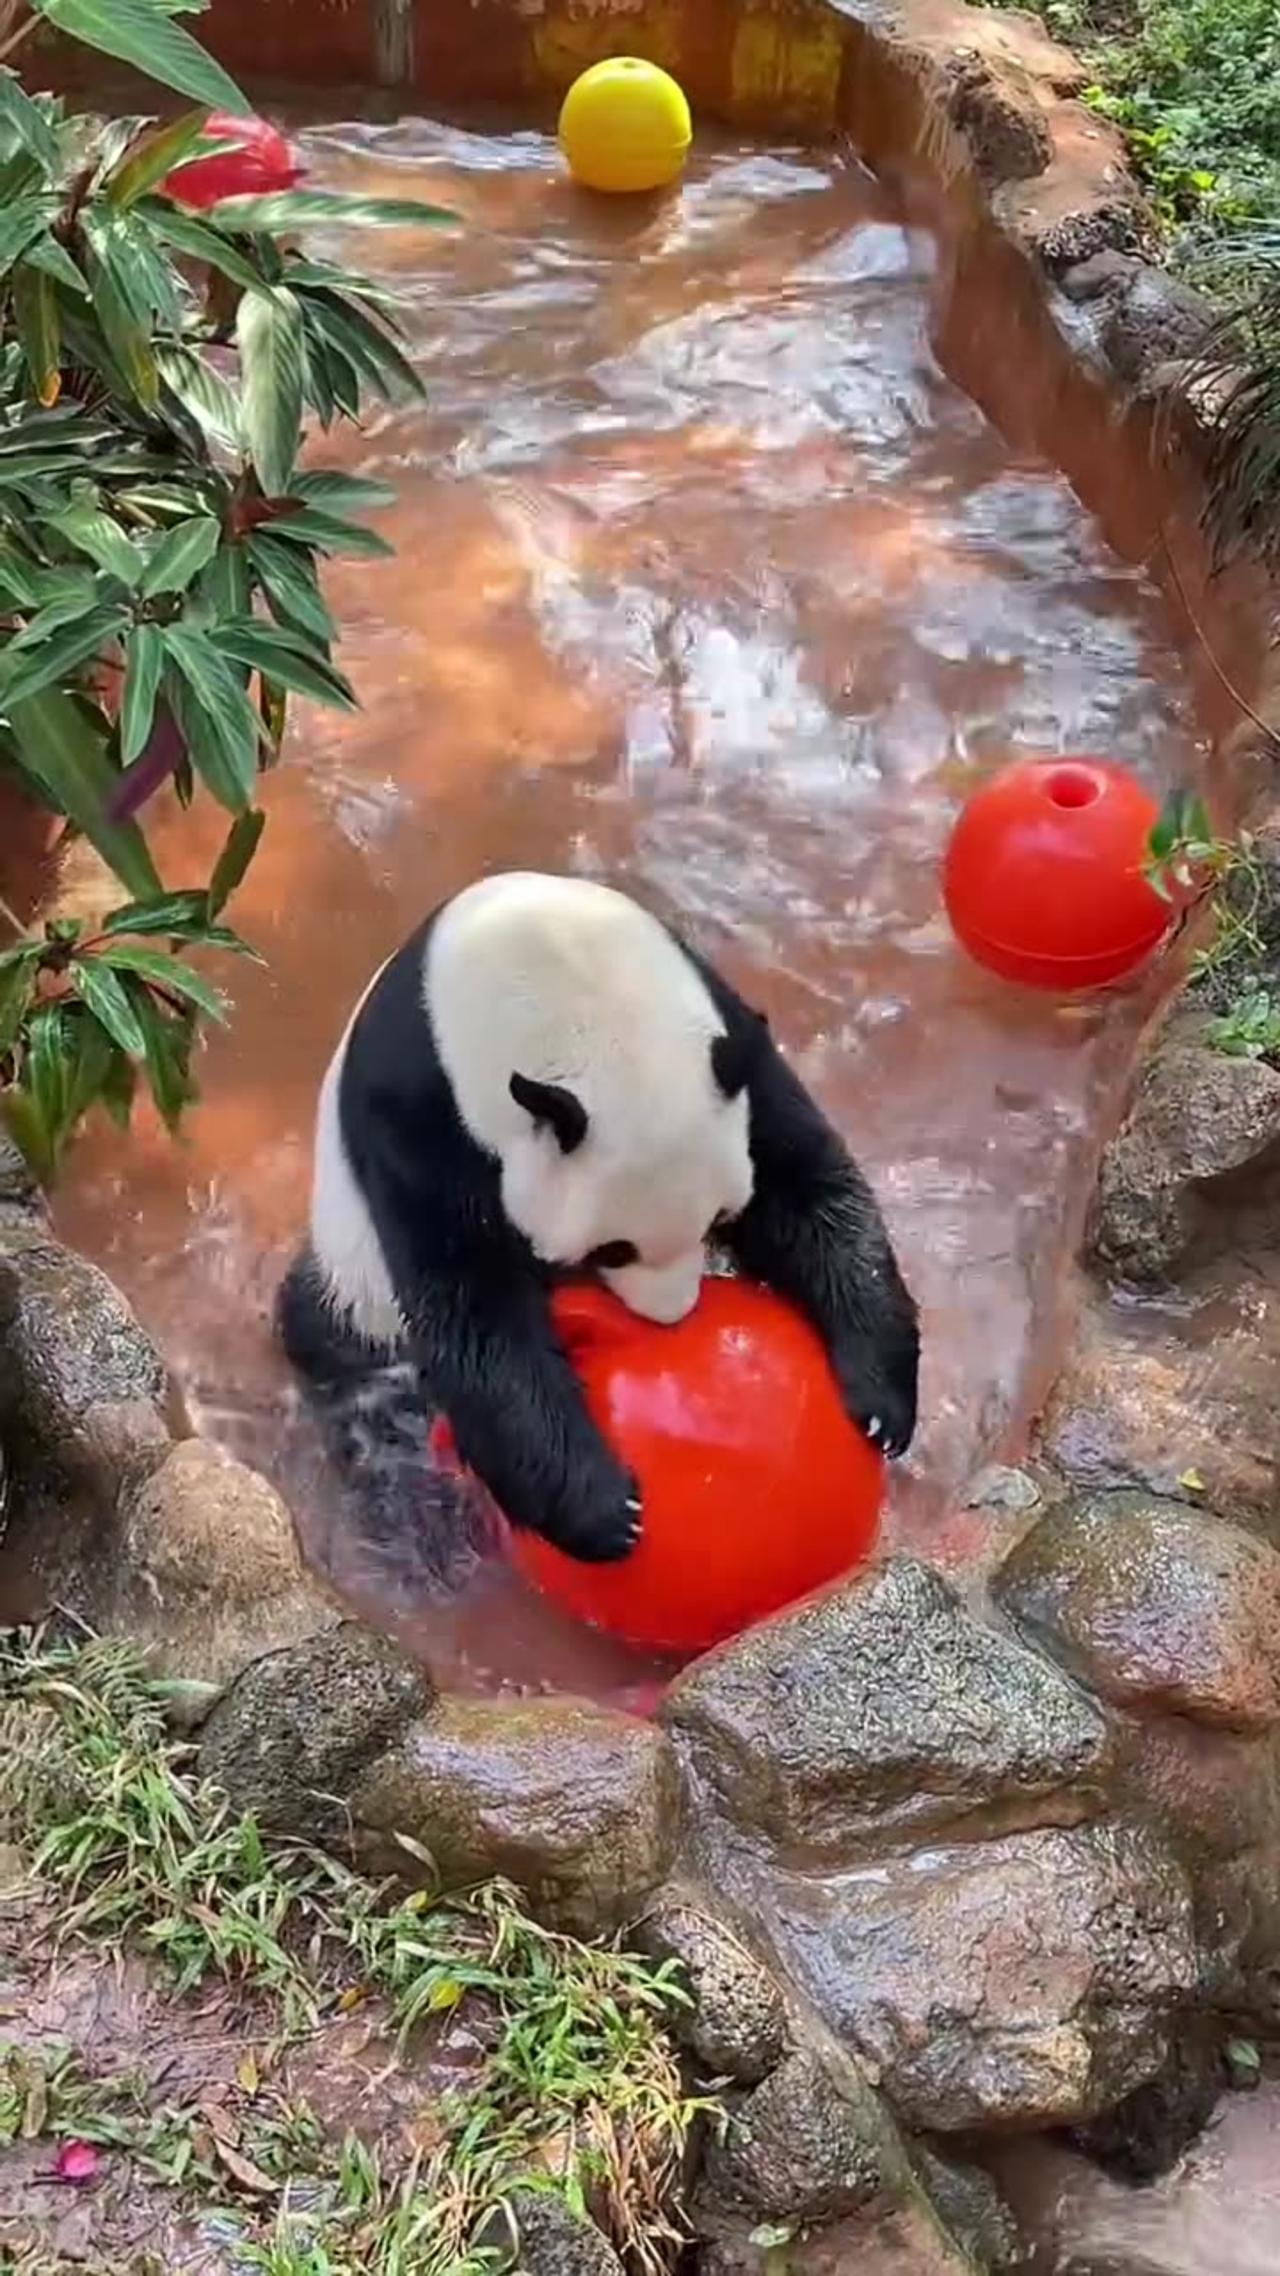 Giant panda Shun Shun has a great time playing ball